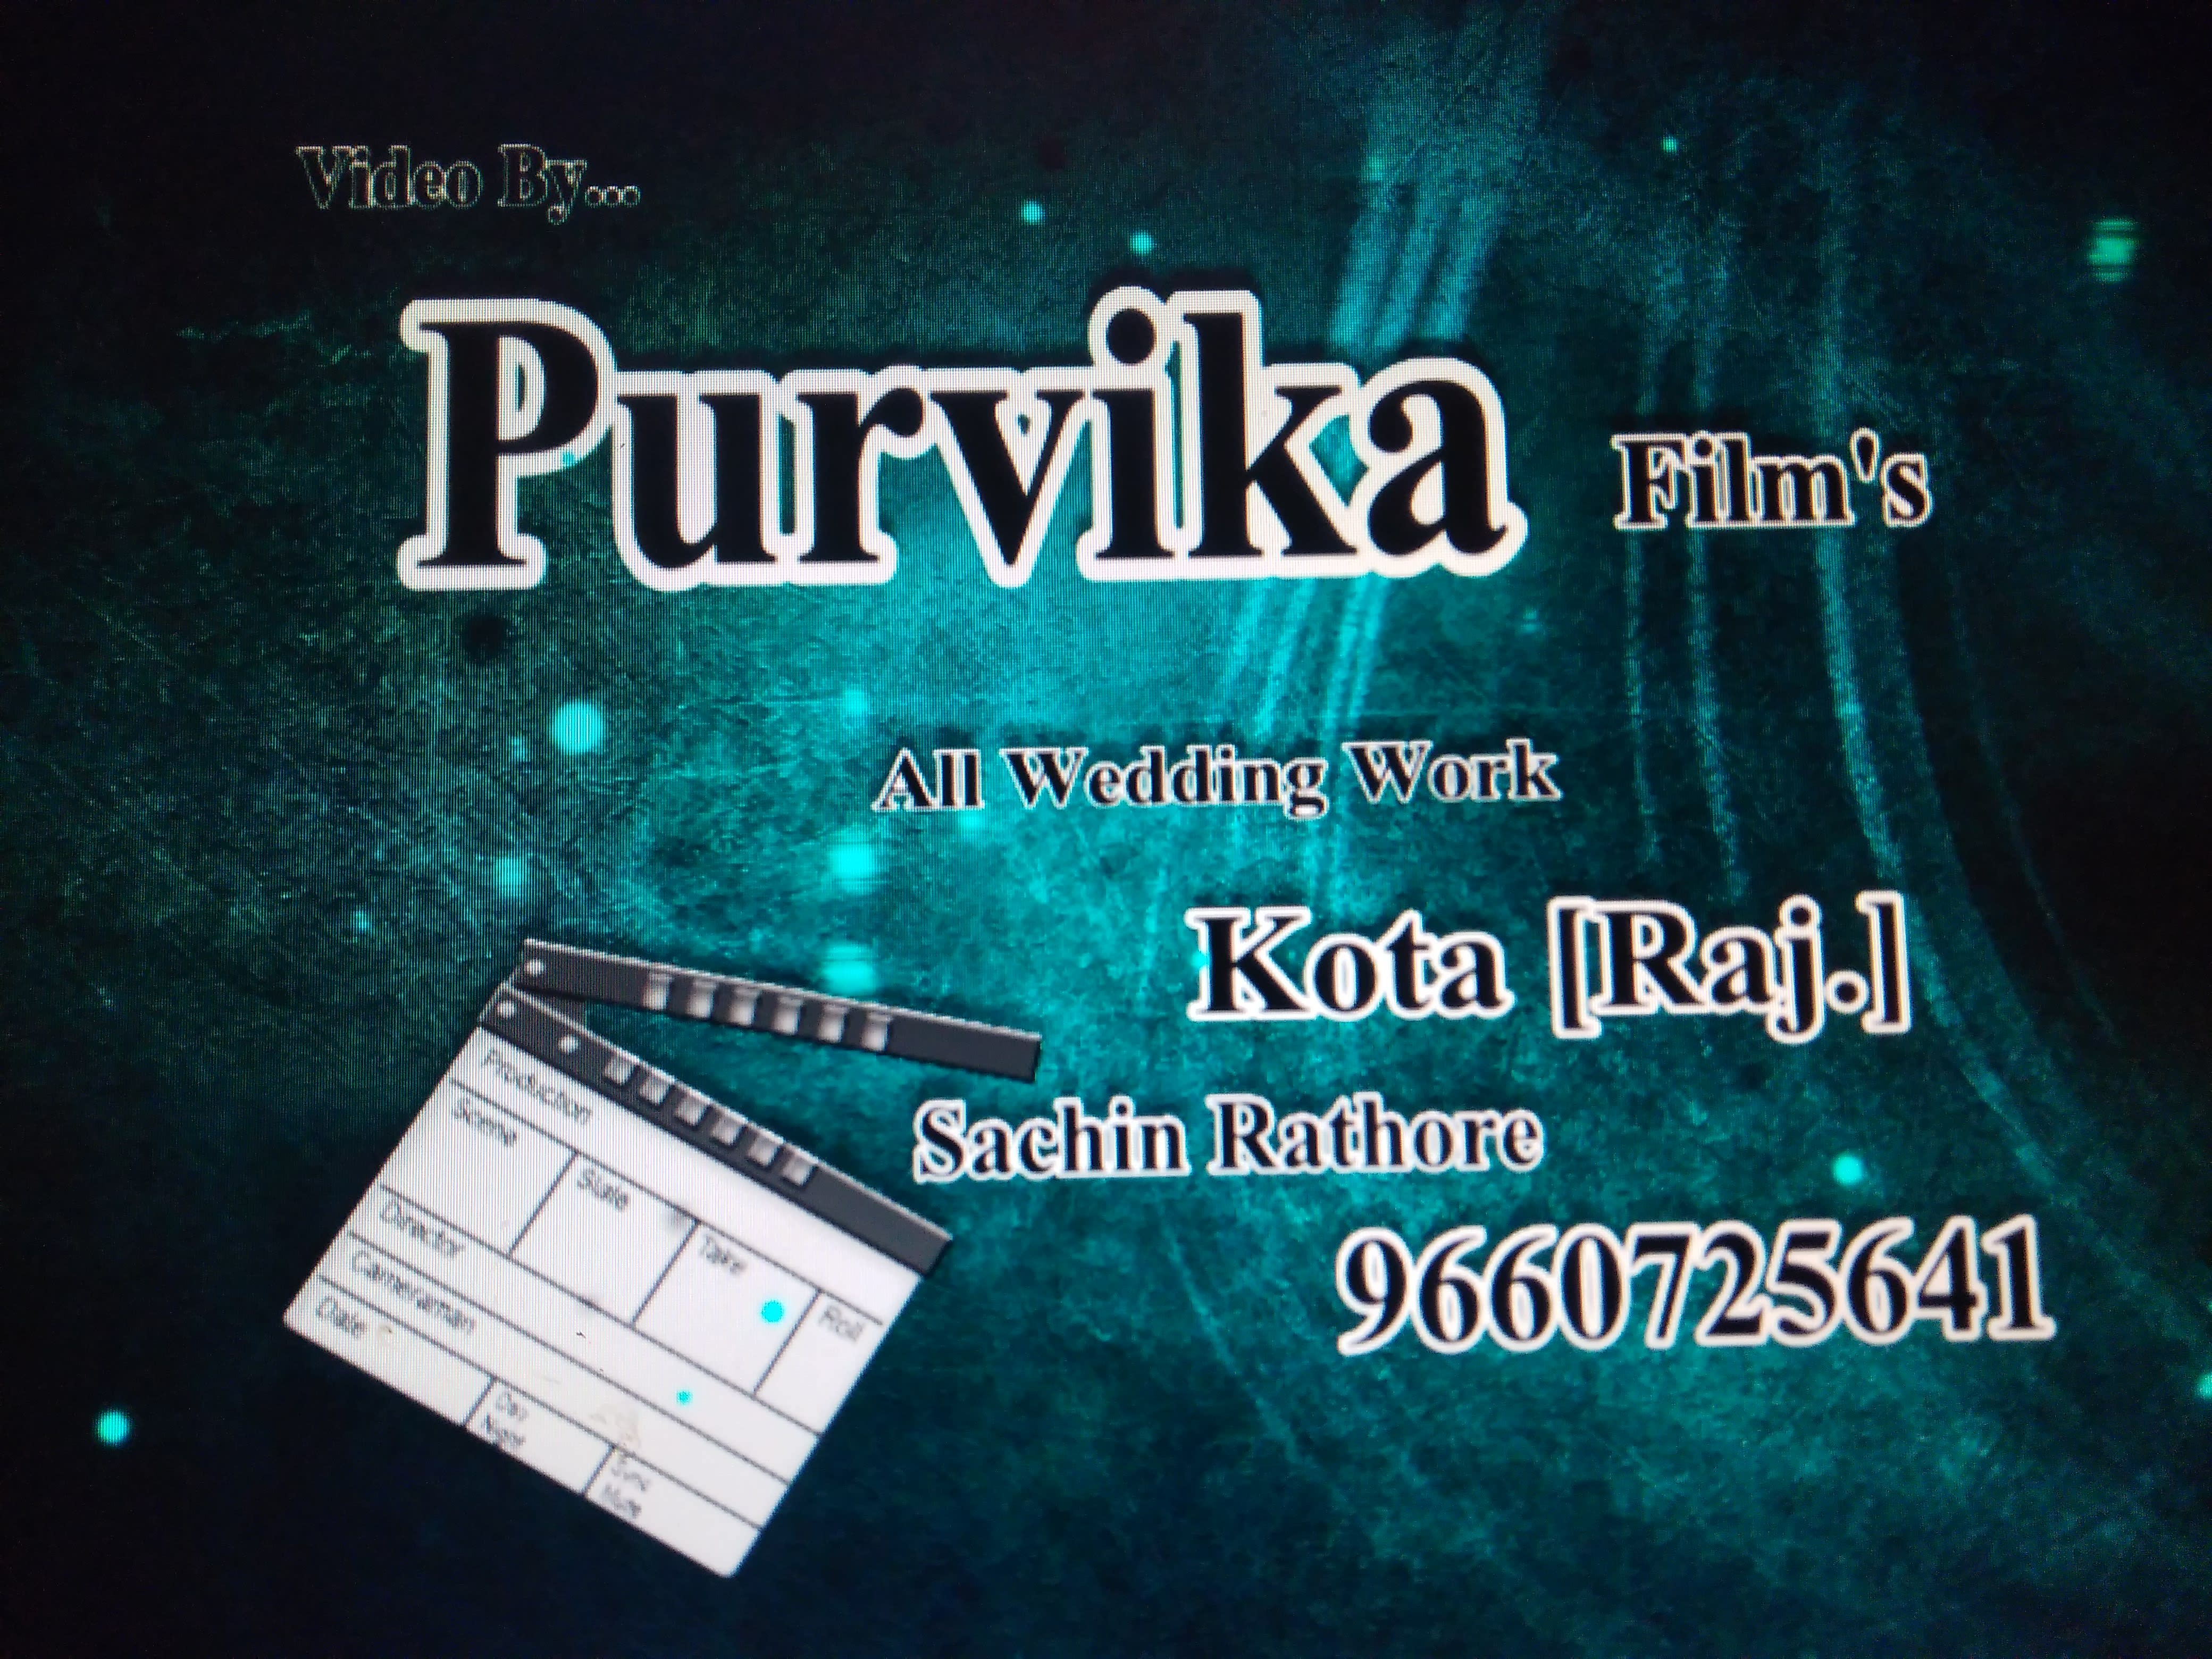 Purvika Films